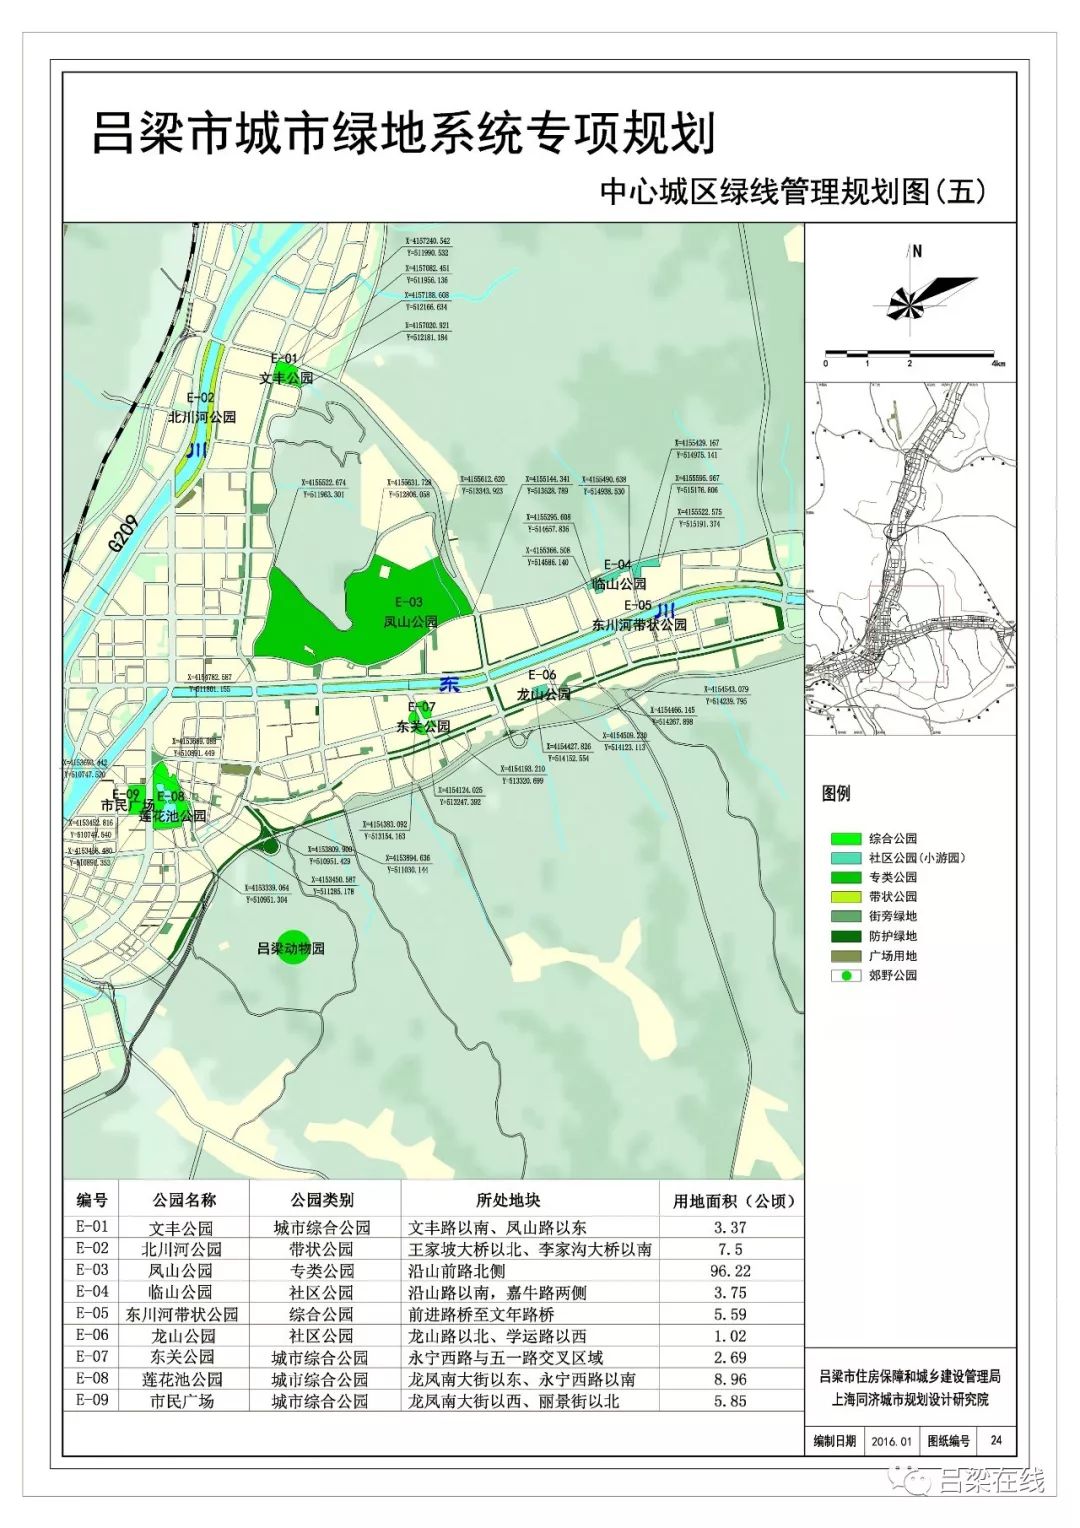 【便民信息】吕梁市区38座城市公园专项规划(图)